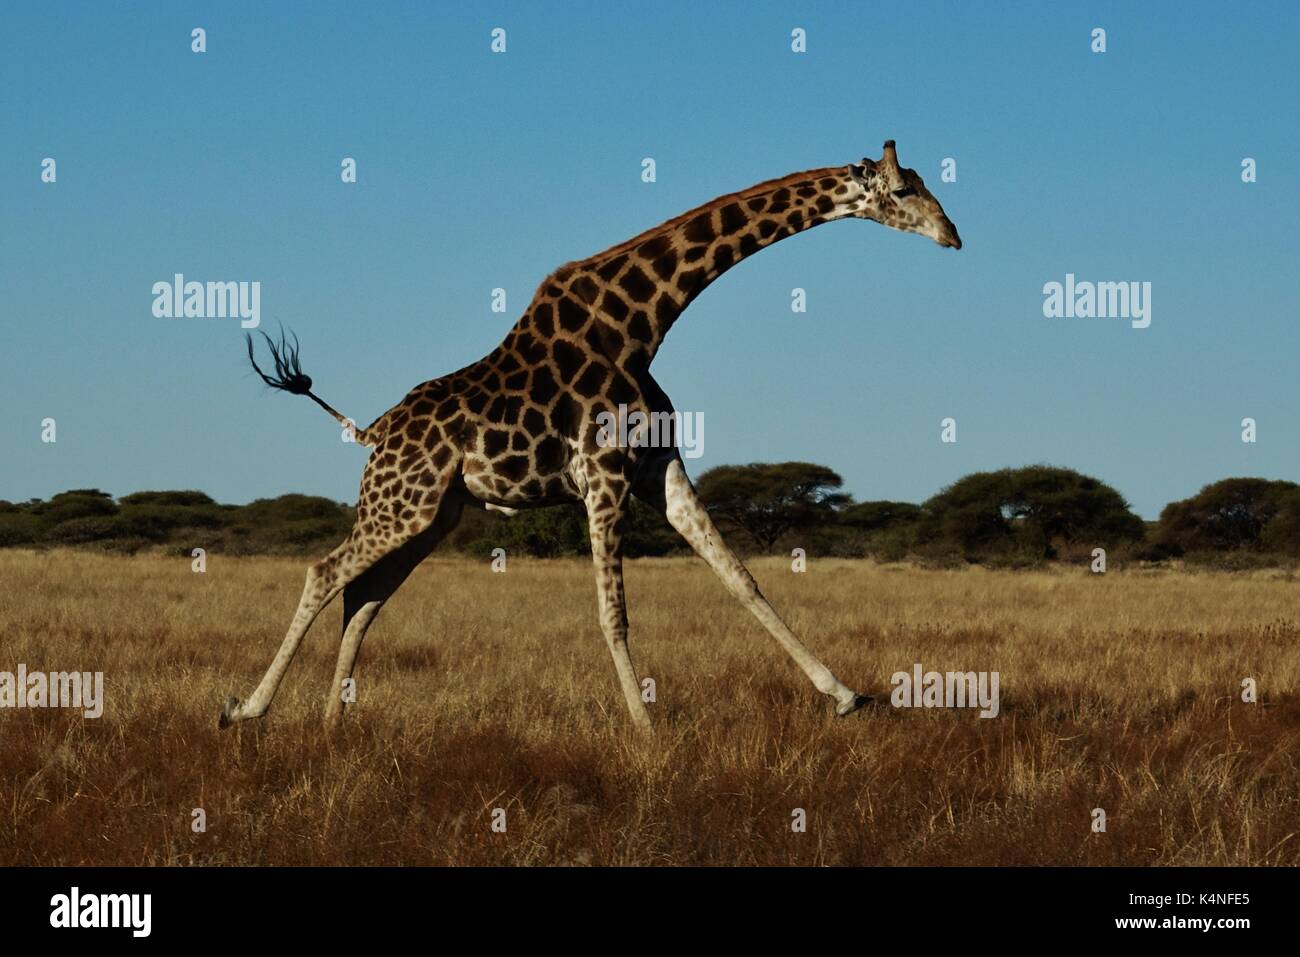 Running Giraffe Stock Photo